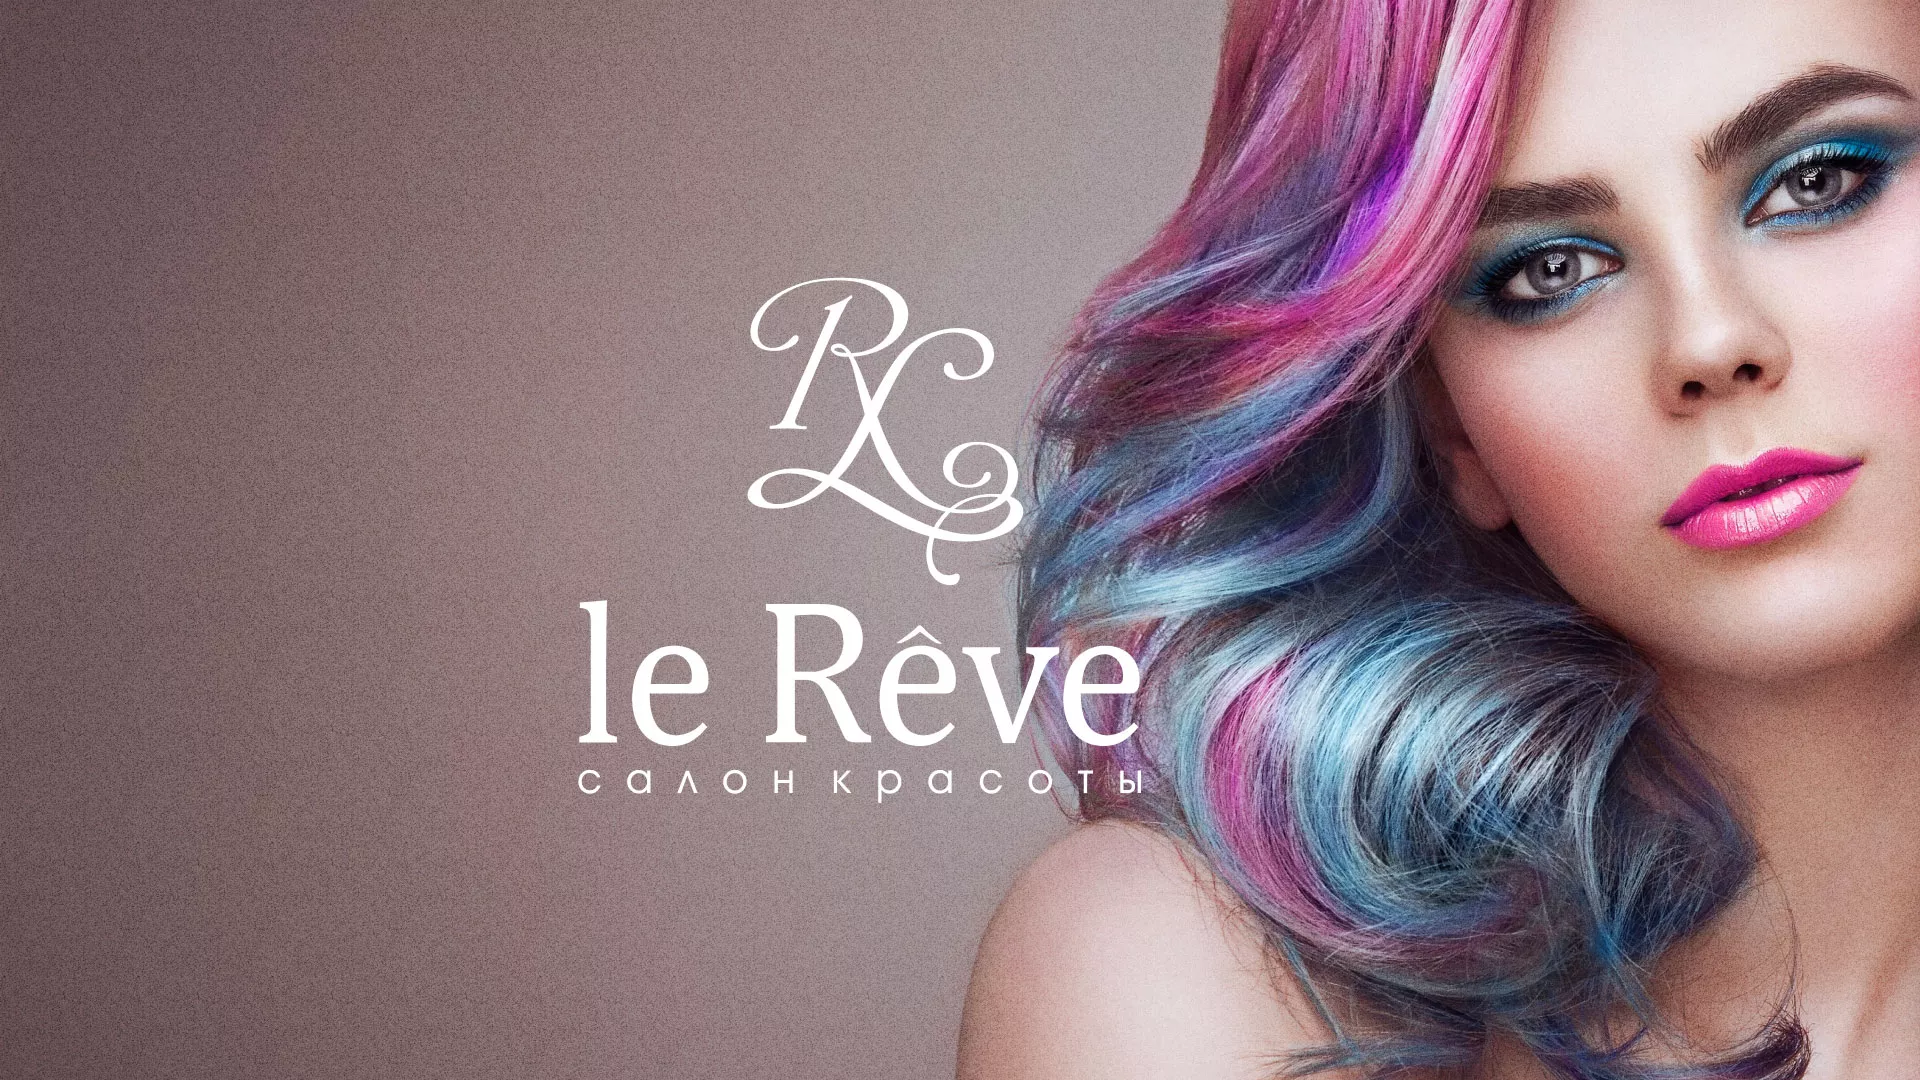 Создание сайта для салона красоты «Le Reve» в Покрове